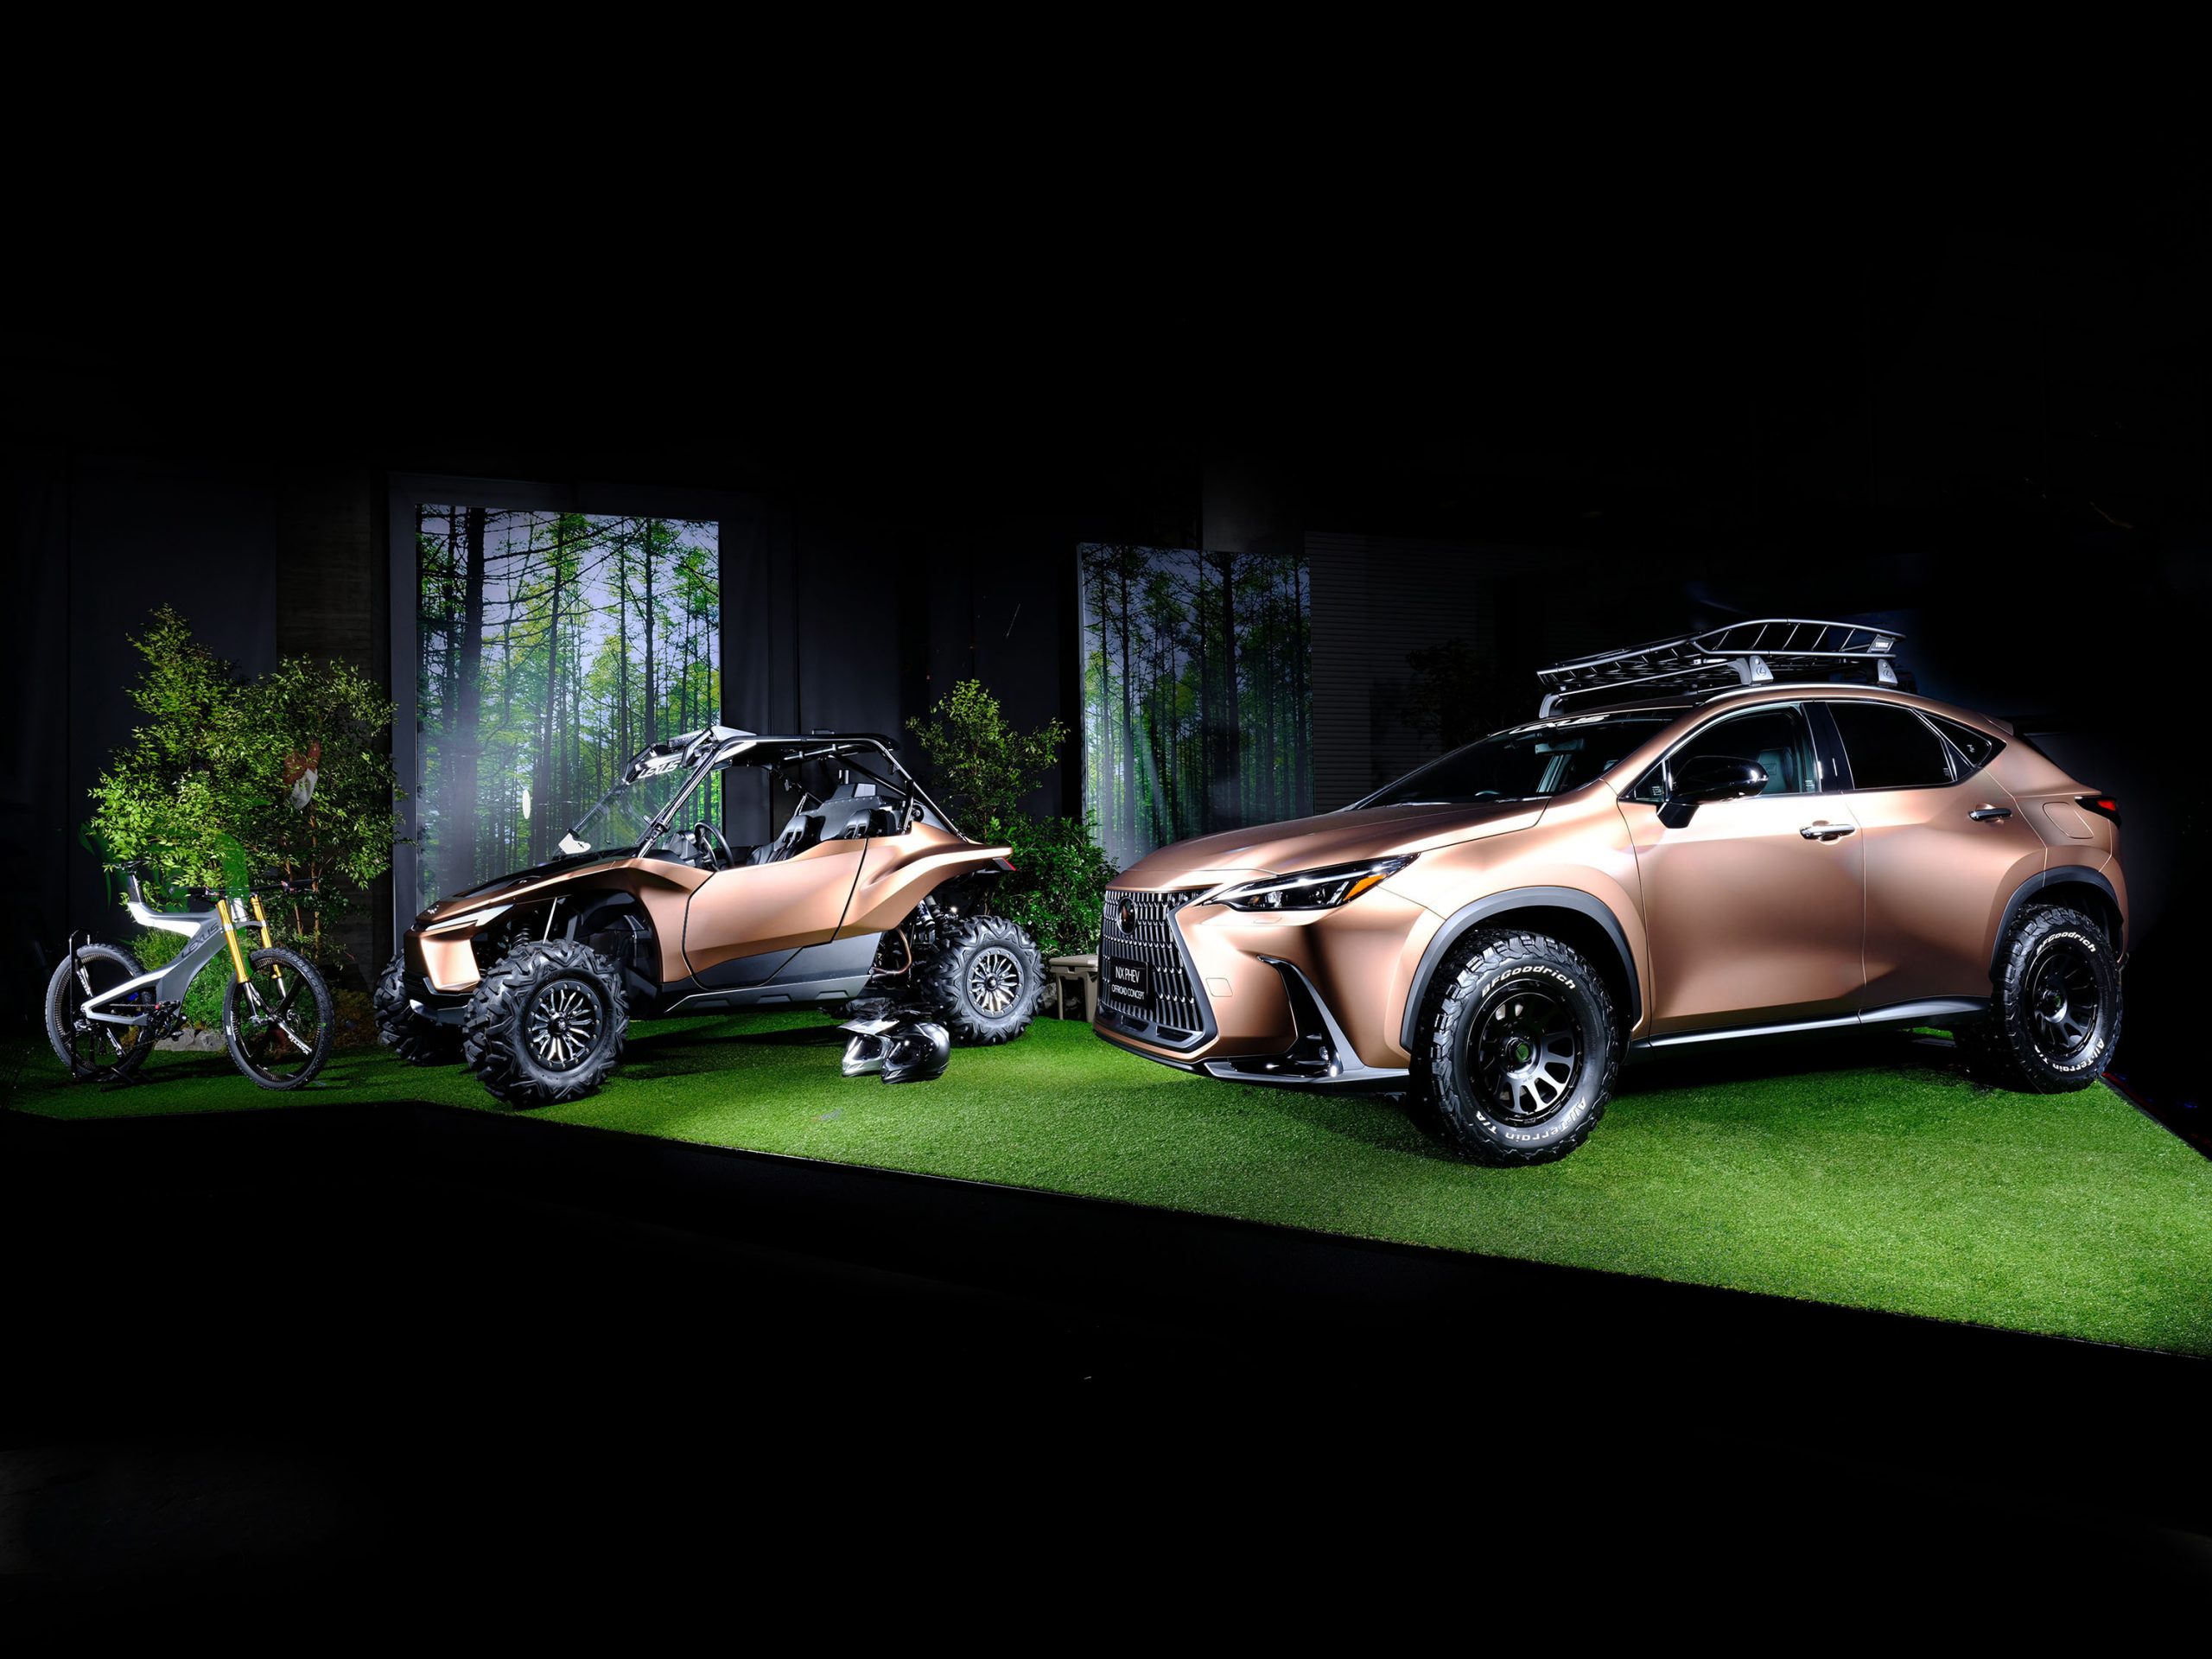 Galería: Lexus Presentará el Prototipo NX Offroad Híbrido Enchufable y el Prototipo de Hidrógeno ROV en el Salón del Automóvil de Tokio 2022